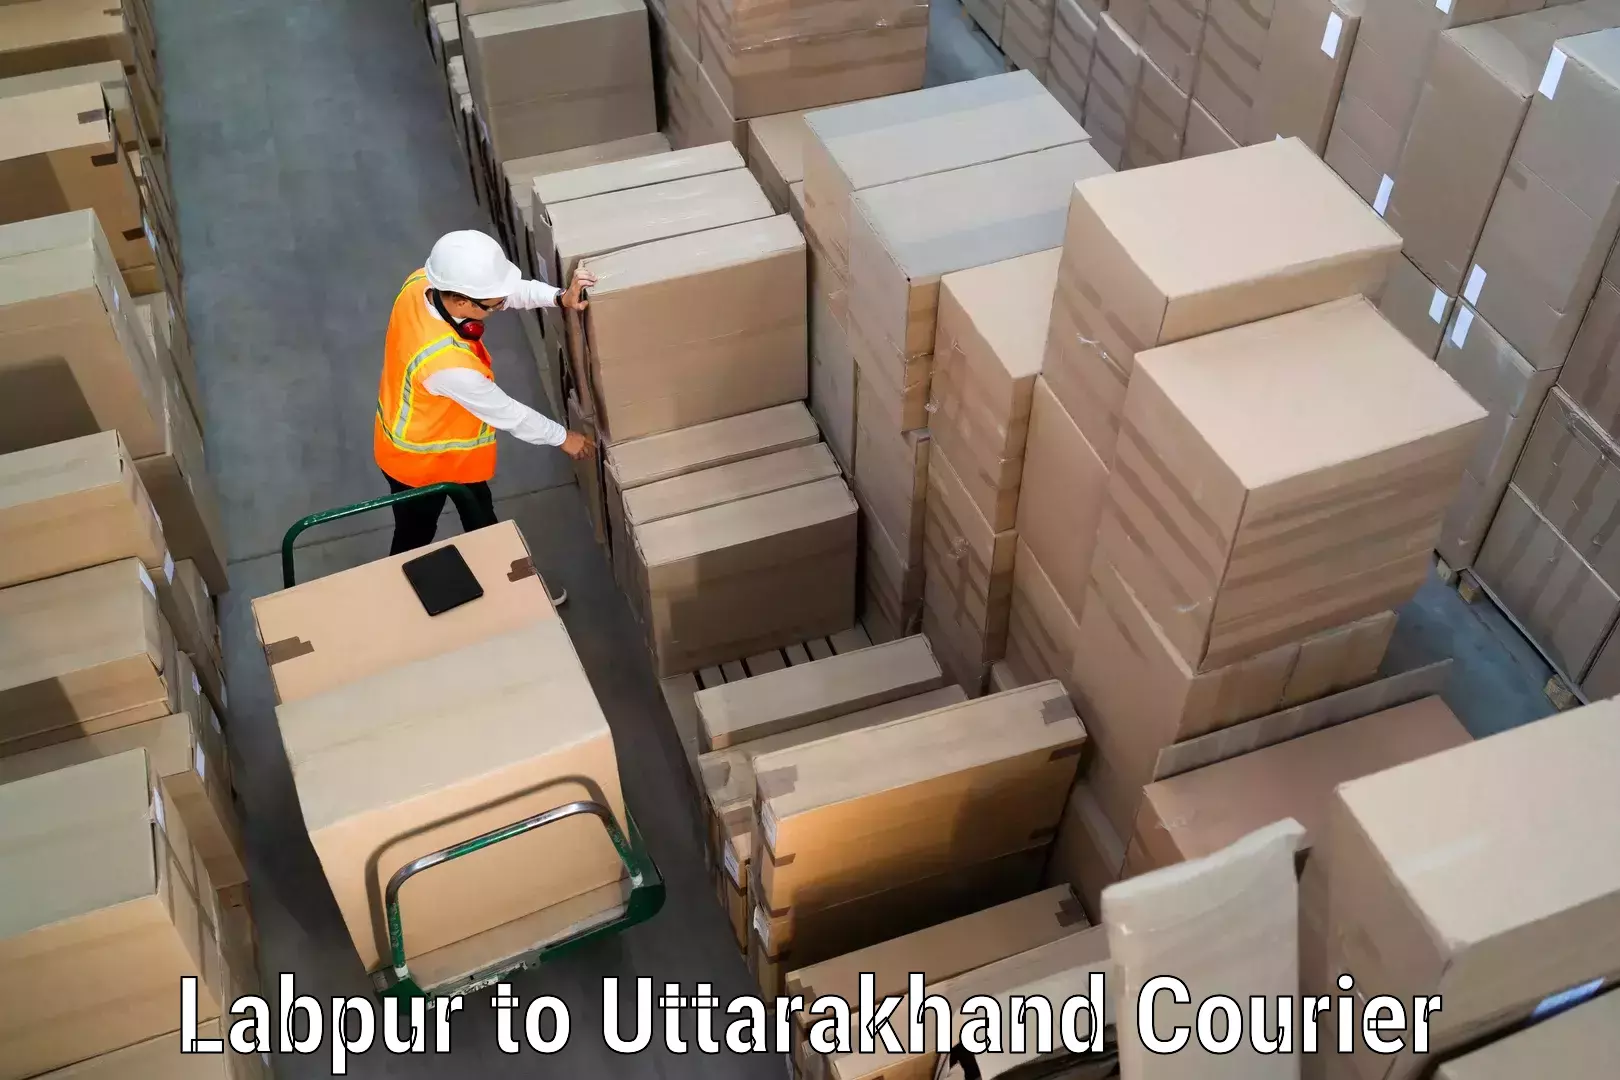 Efficient parcel transport Labpur to Champawat